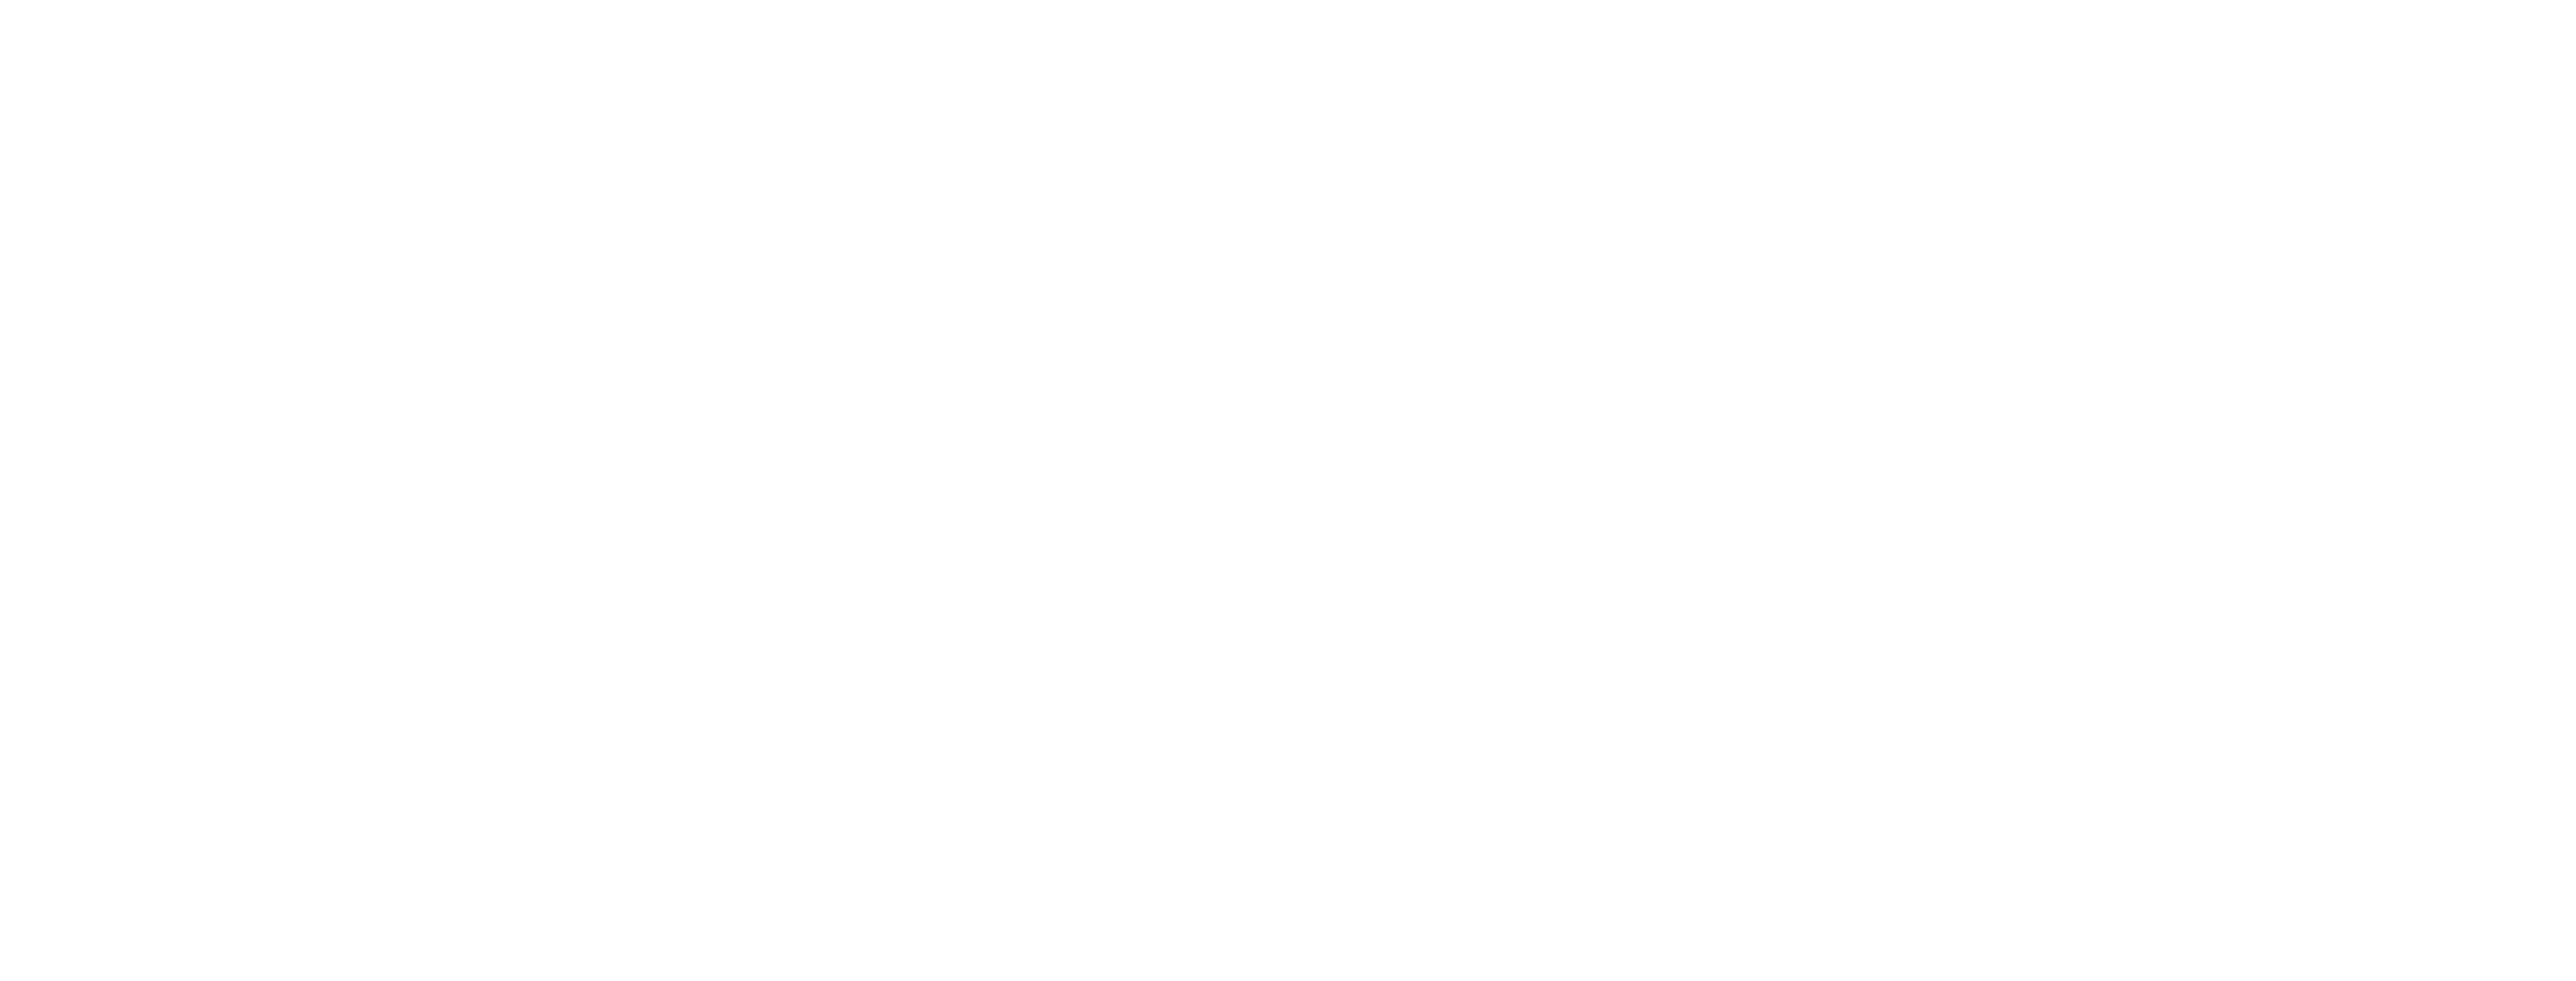 Compliant Clients Logo